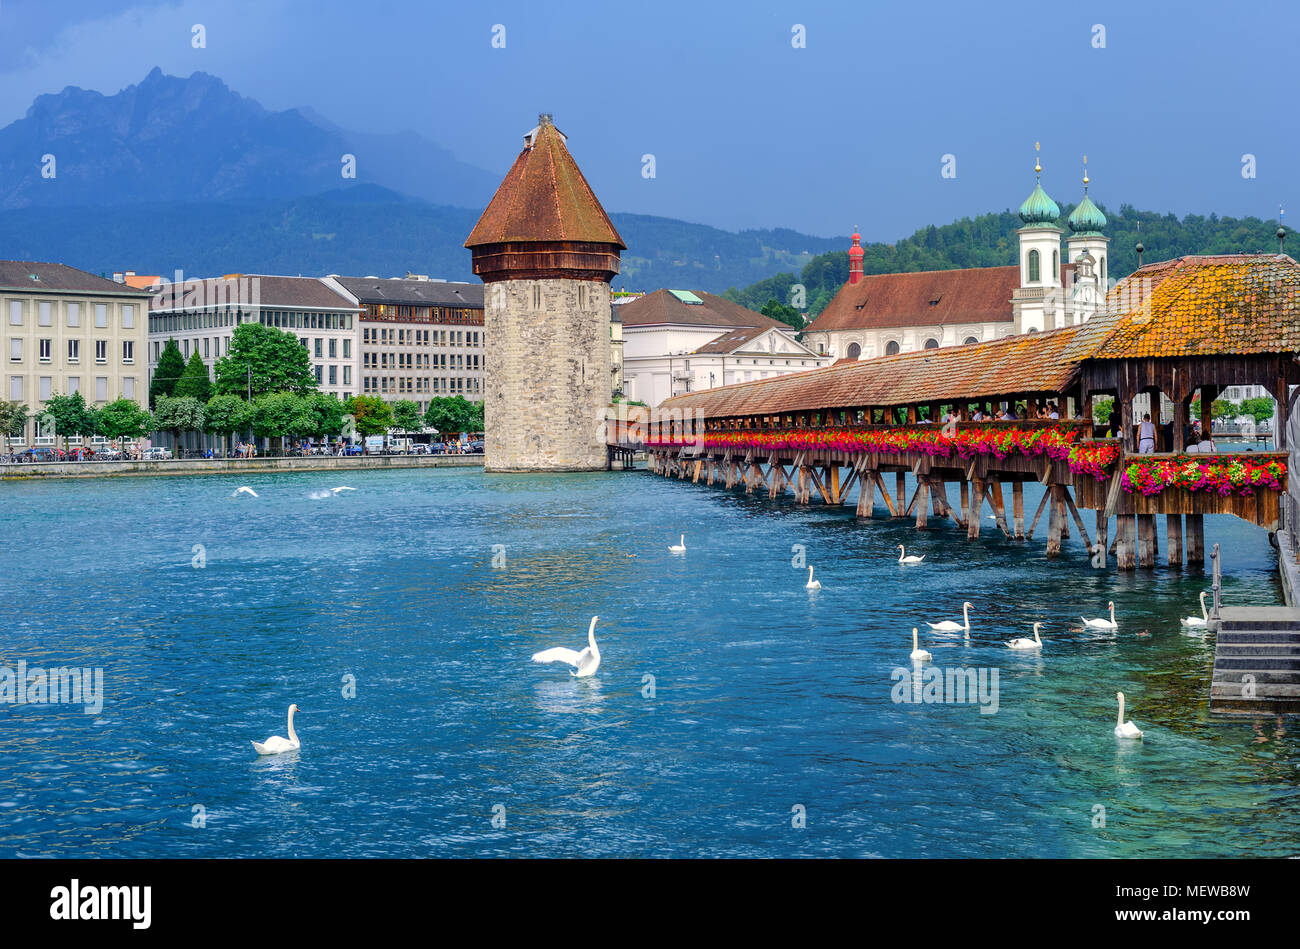 Chapelle en bois historique pont sur la rivière Reuss, stone Water Tower et le Mont Pilate dans la vieille ville de Lucerne, Suisse Banque D'Images